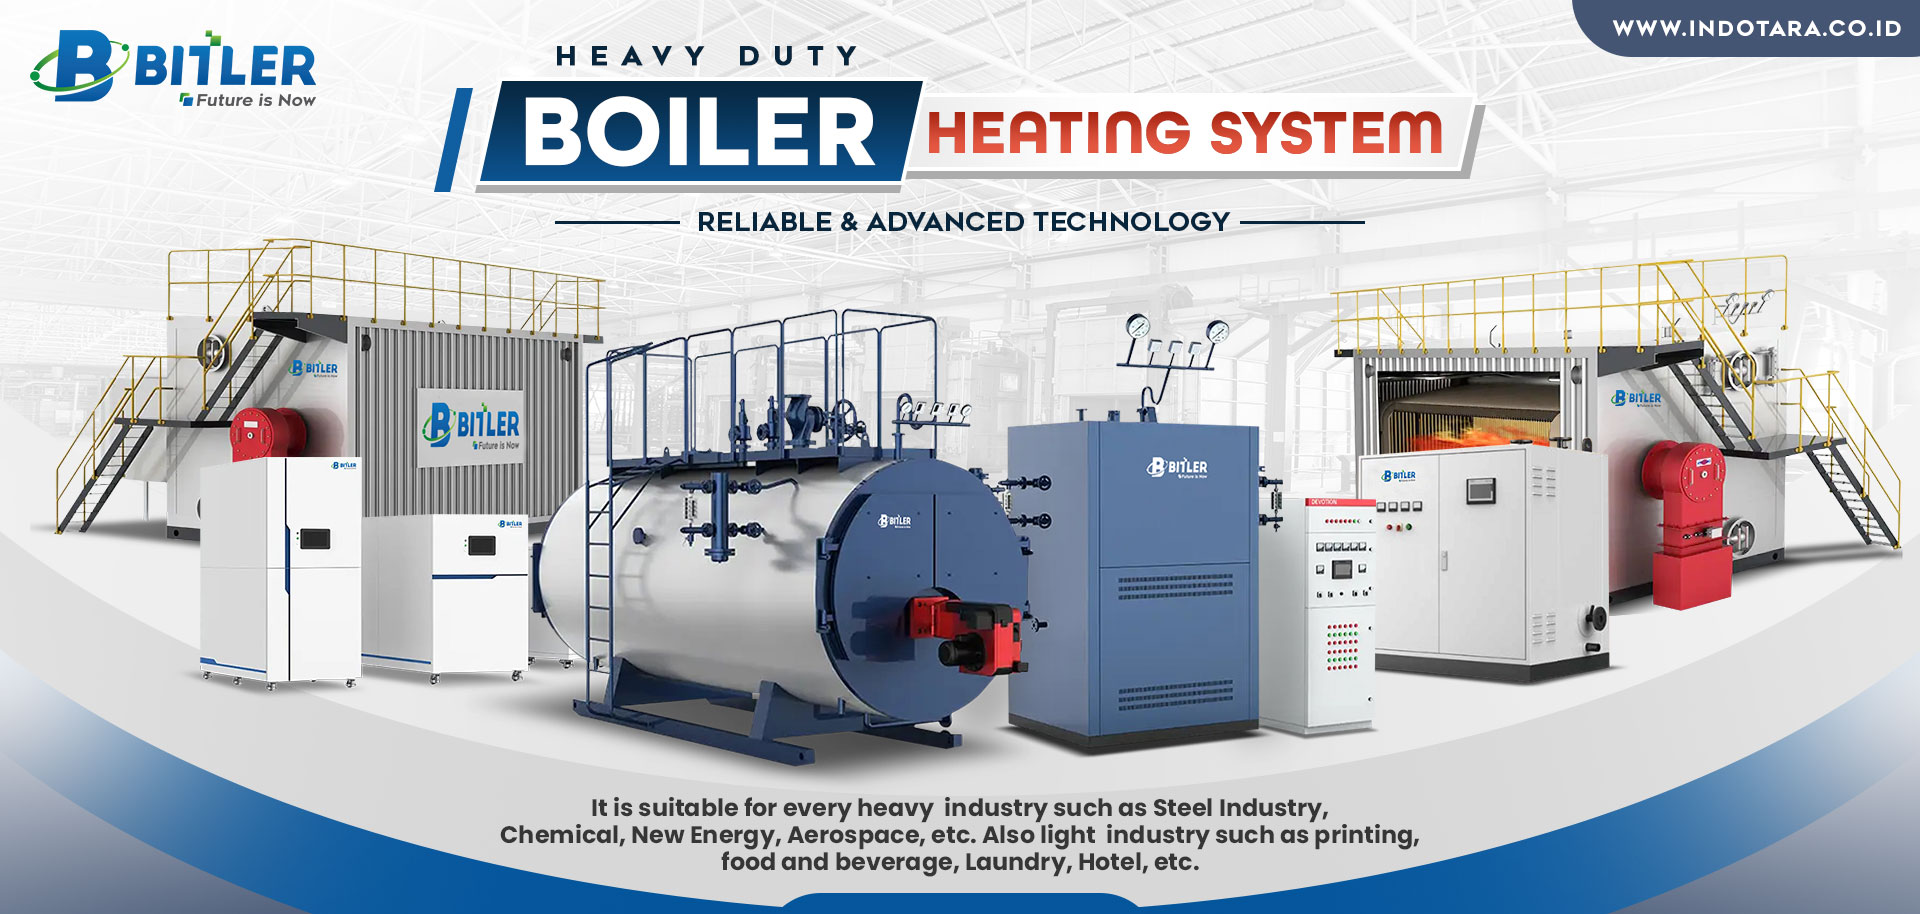 Jual Bitler Boiler Heating System, Harga Bitler Boiler Heating System, Bitler Boiler Heating System Berkualitas